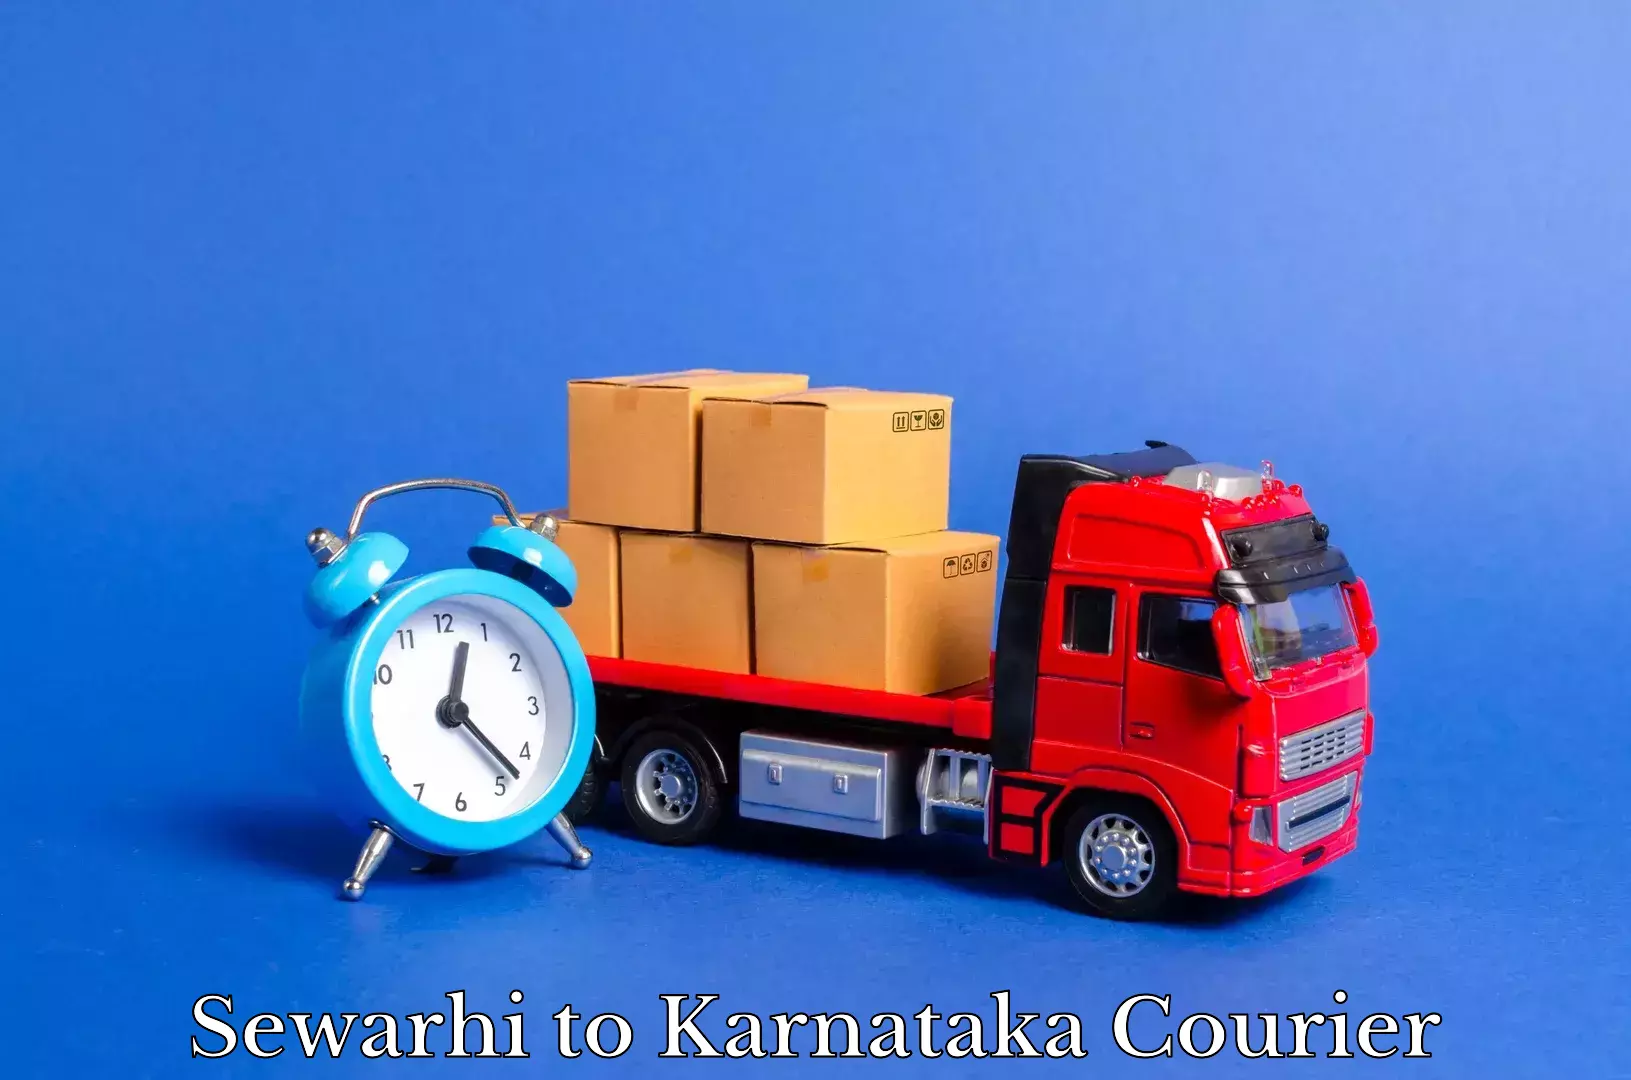 Furniture moving and handling Sewarhi to Bangalore